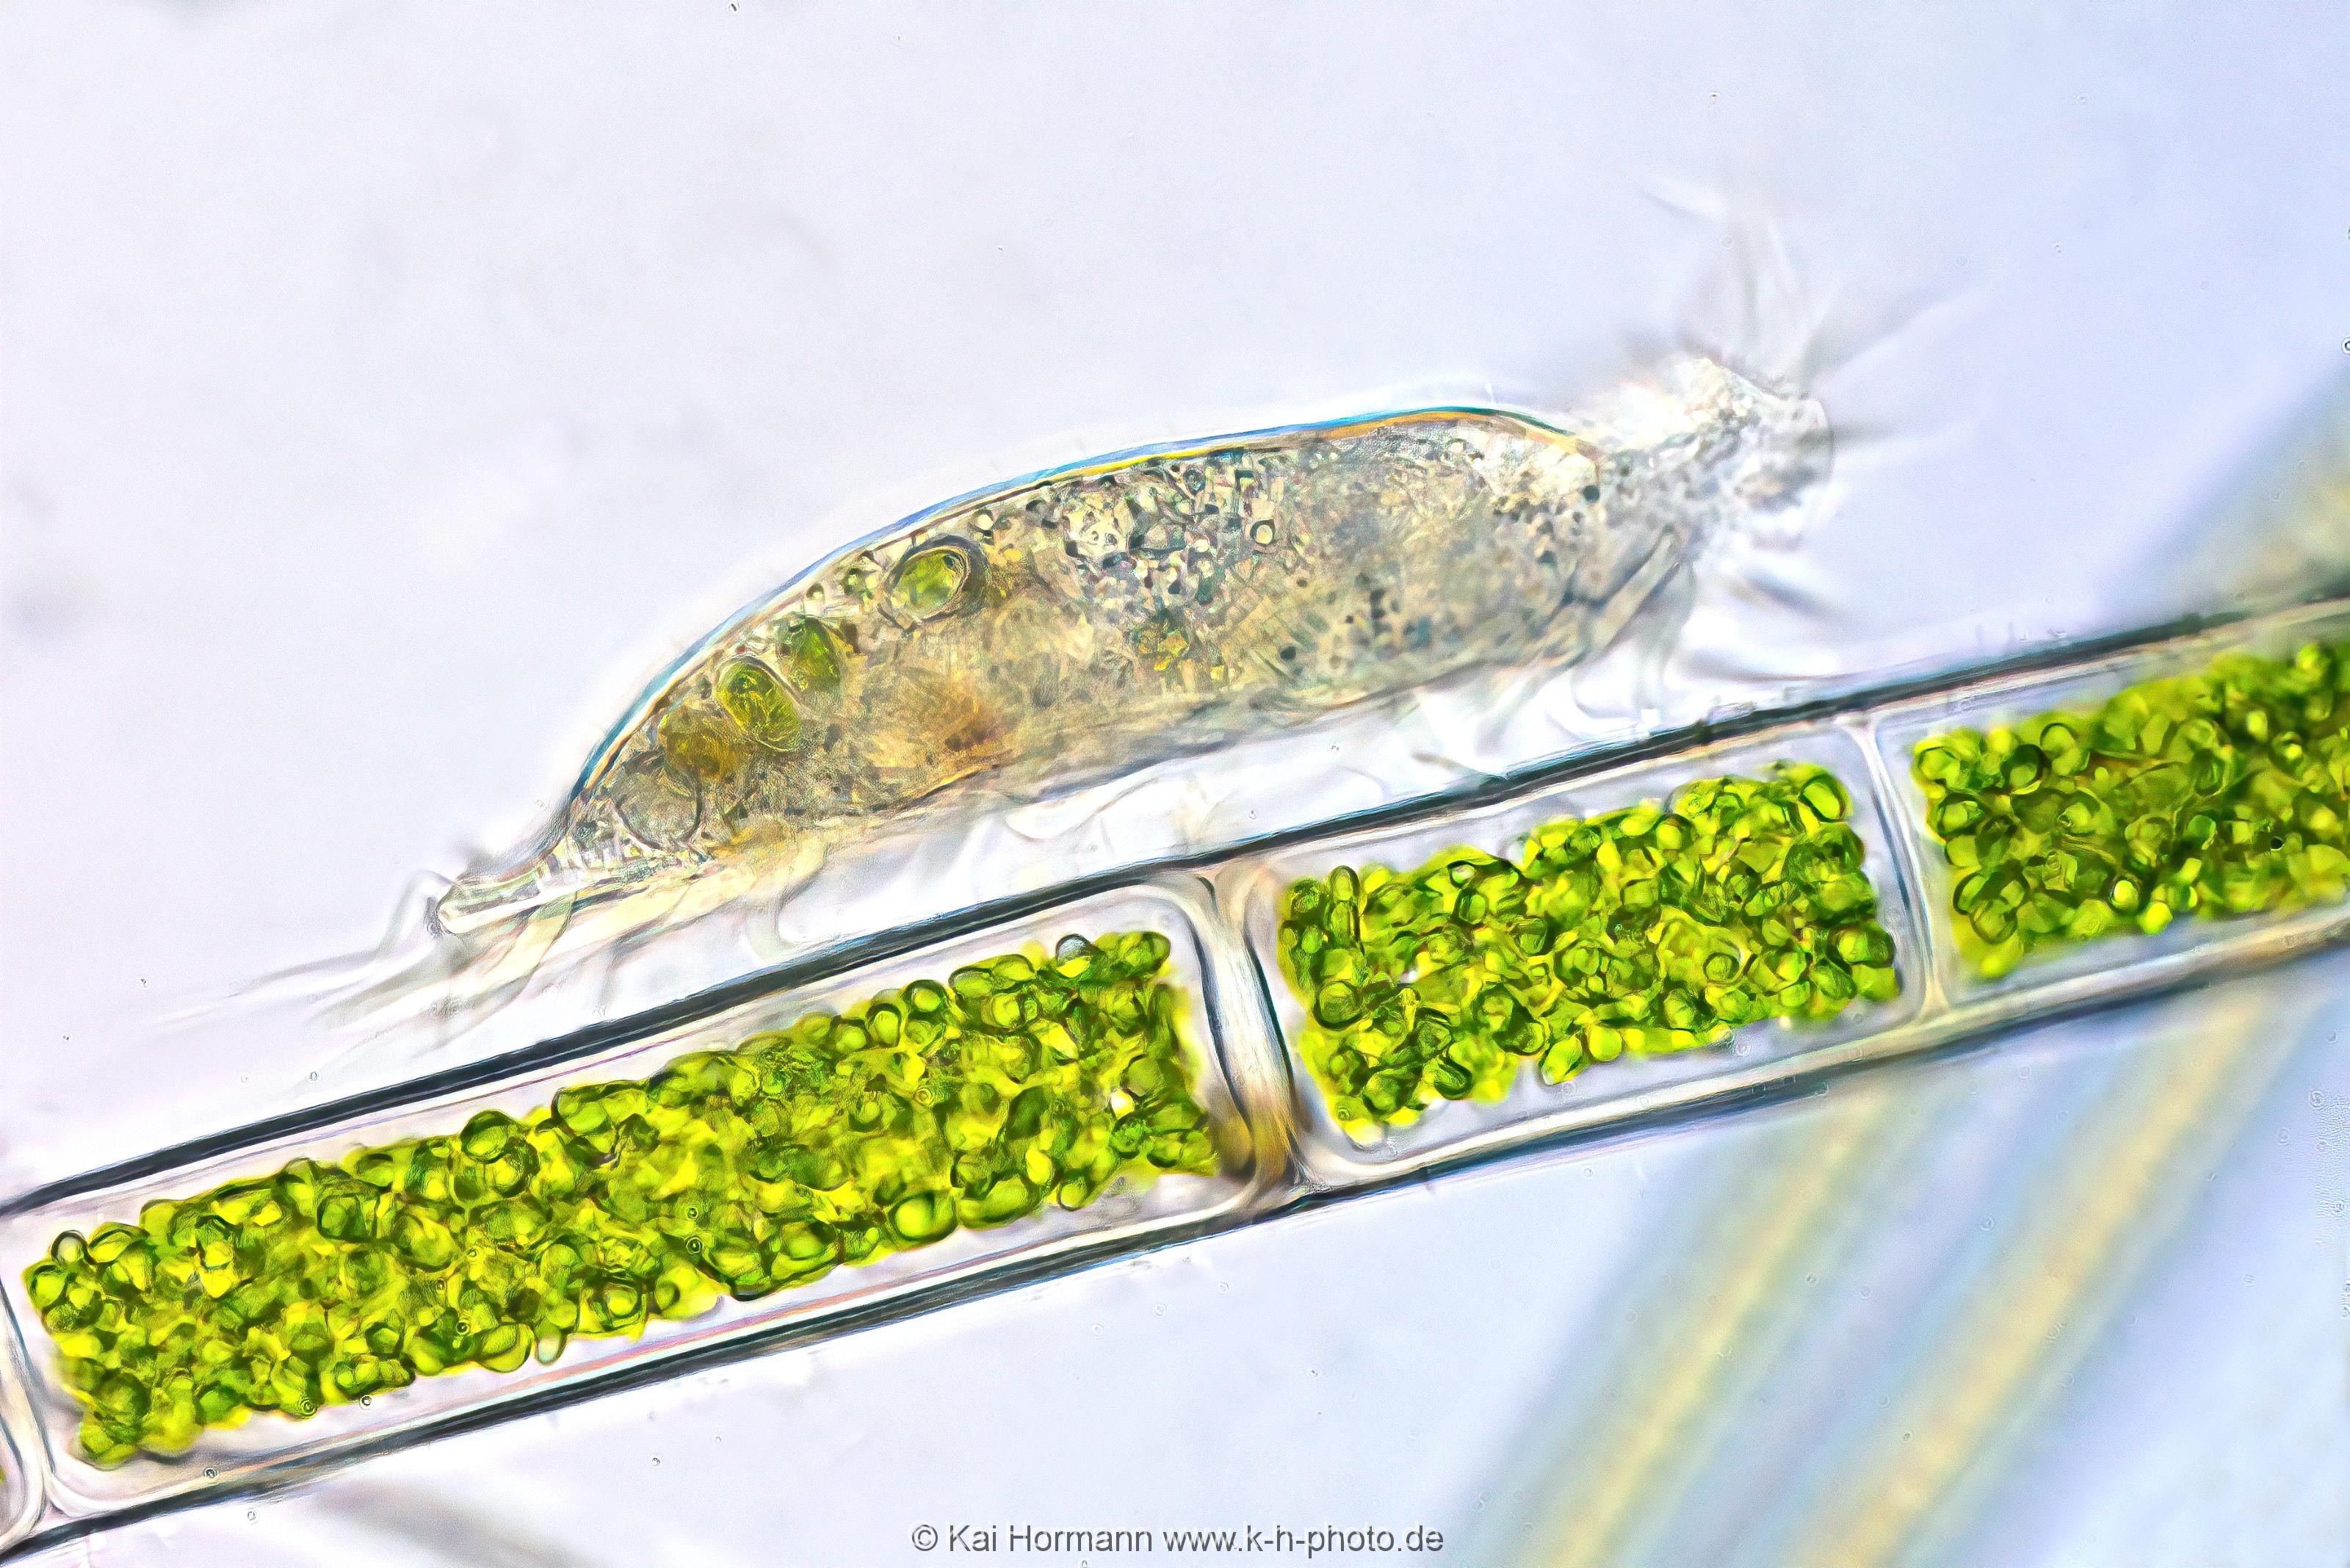 Waffentierchen (Seitenansicht). Mikrofotografie: Mikroskopische Aufnahmen von Einzellern, Algen und Kleinstlebewesen.